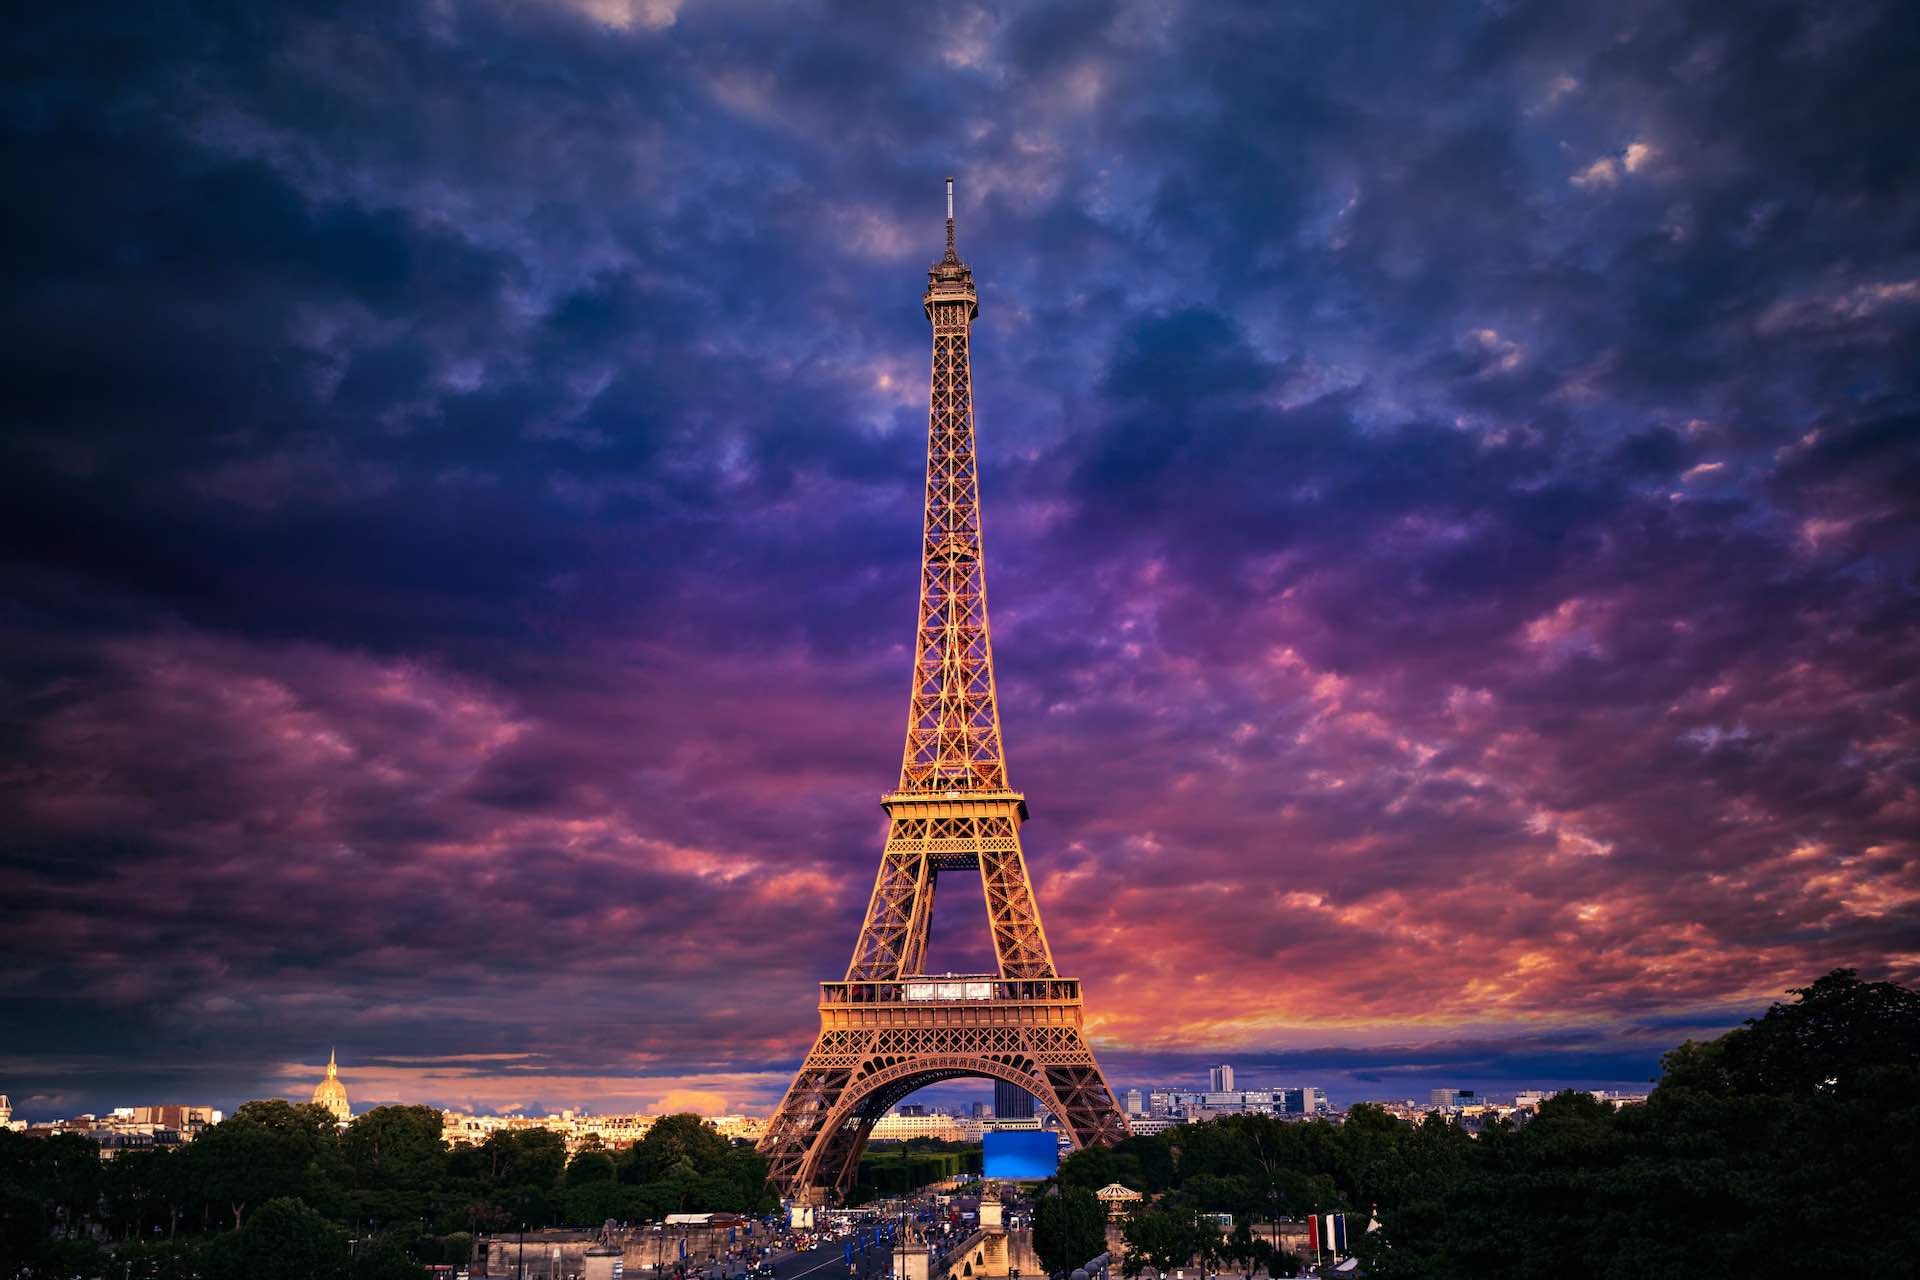 Paris to darken Eiffel Tower earlier to save energy